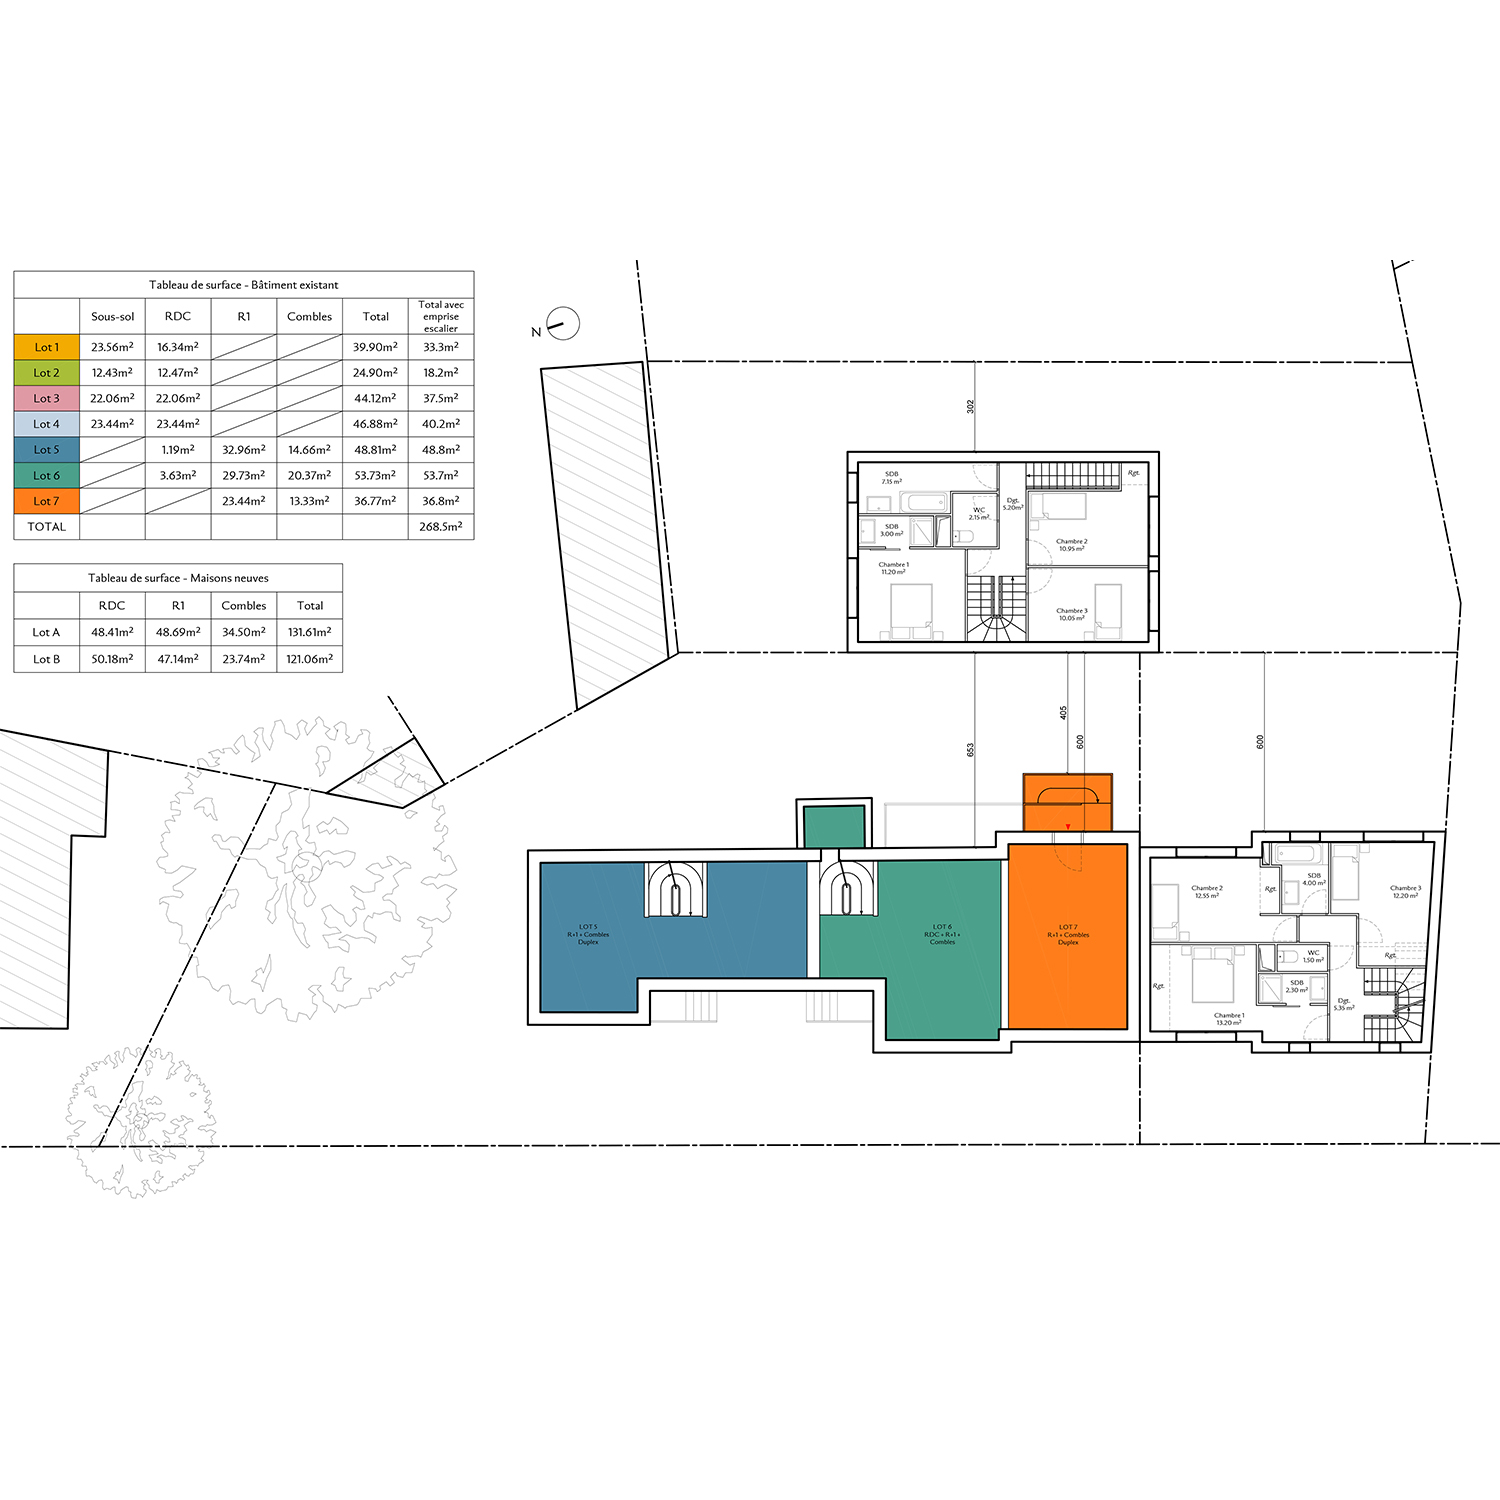 3_Avramova architecte_Bourg-la-Reine_RＩabilitation et crＢtion de logements_Plan R+1